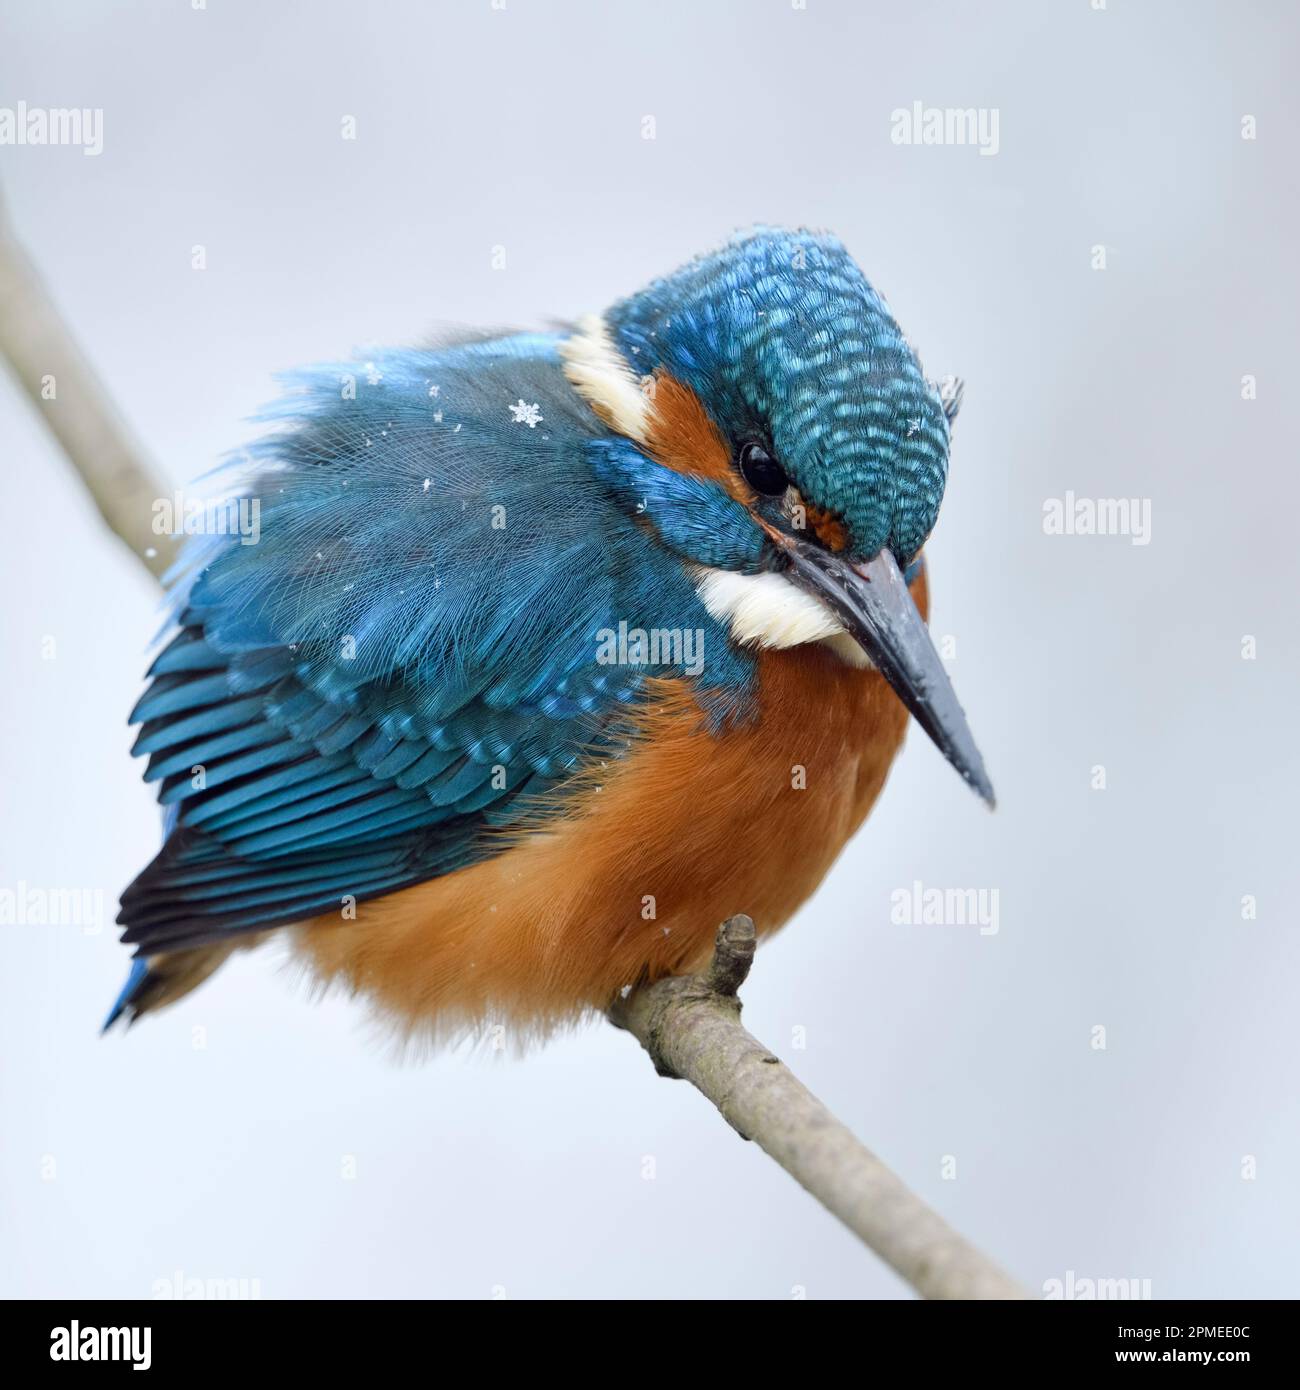 Kingfisher eurasien / Eisvogel ( Alcedo atthis ), homme en hiver avec des flocons de neige sur son plumage, perché sur une branche, chasse, à la recherche de proies, wil Banque D'Images